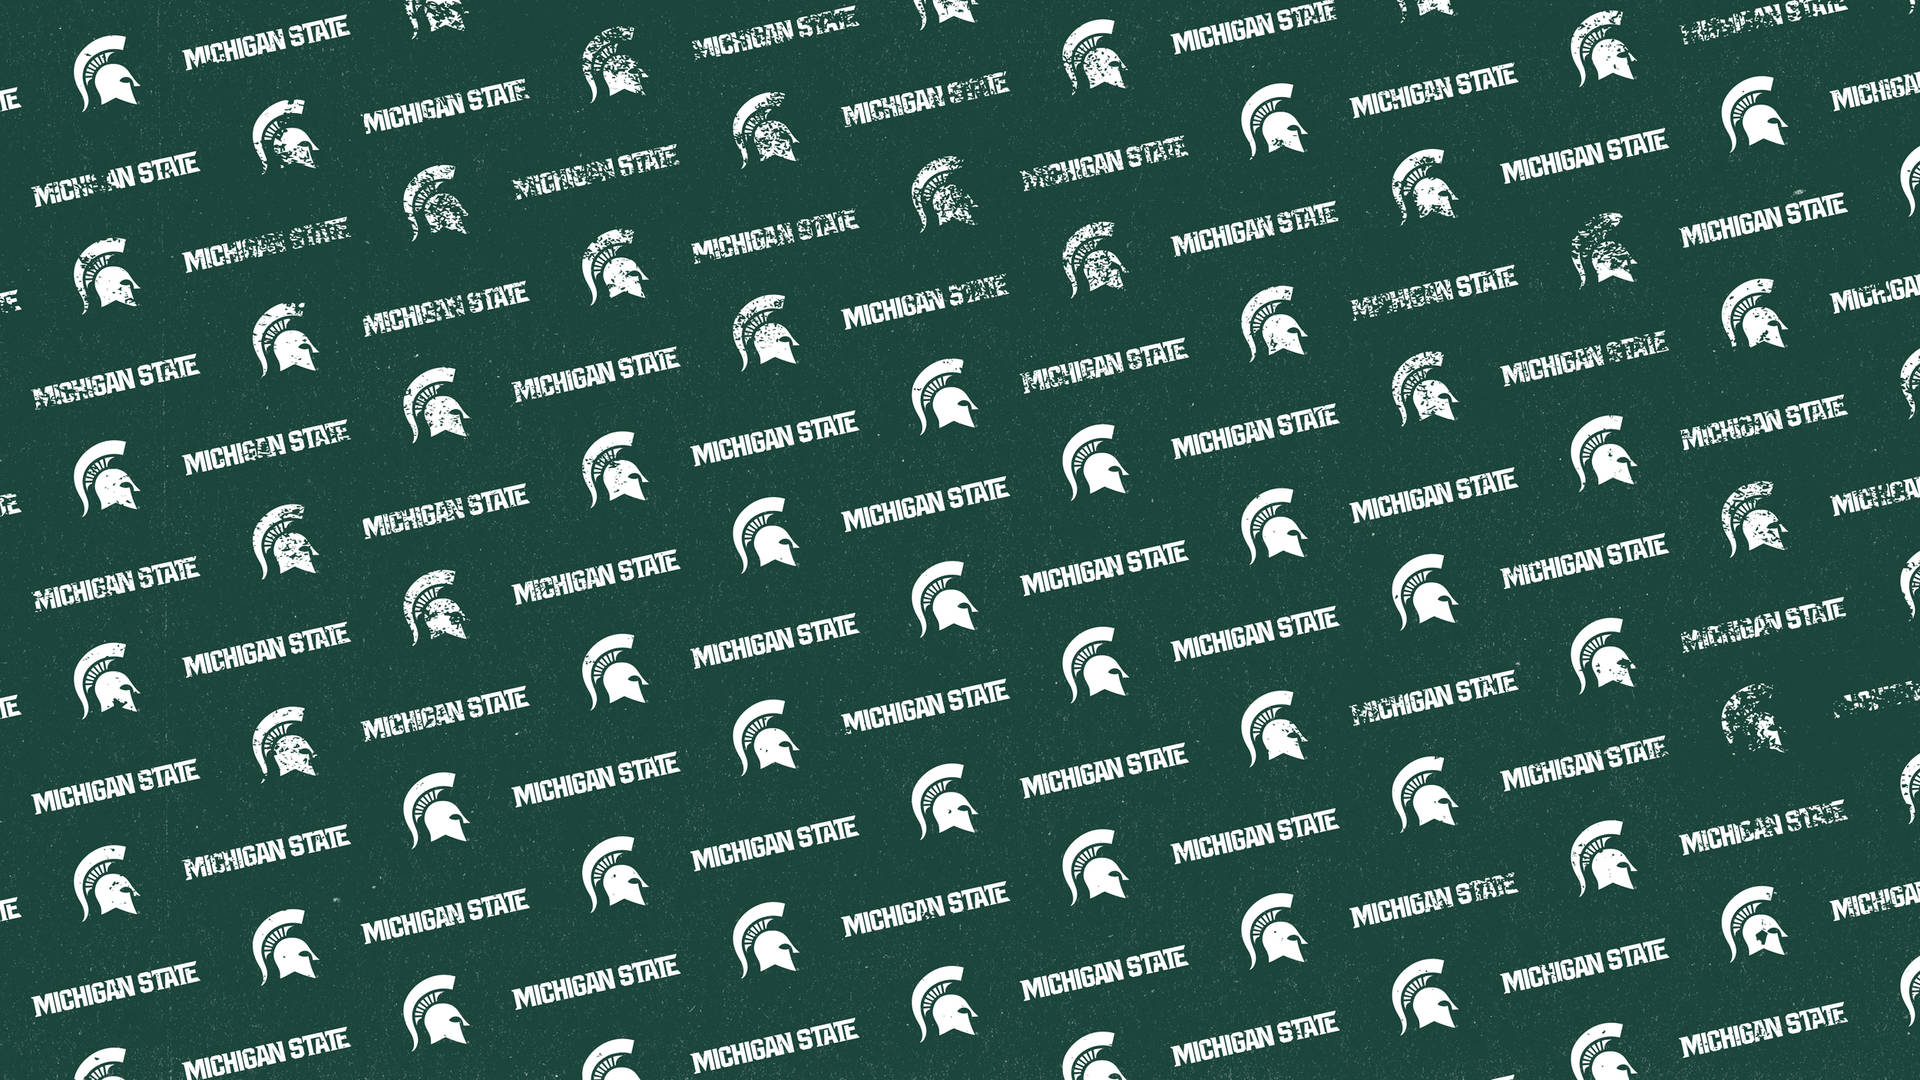 Michiganstate University Spartans Múltiples Logotipos Para Fondos De Pantalla De Computadora O Teléfono Móvil. Fondo de pantalla